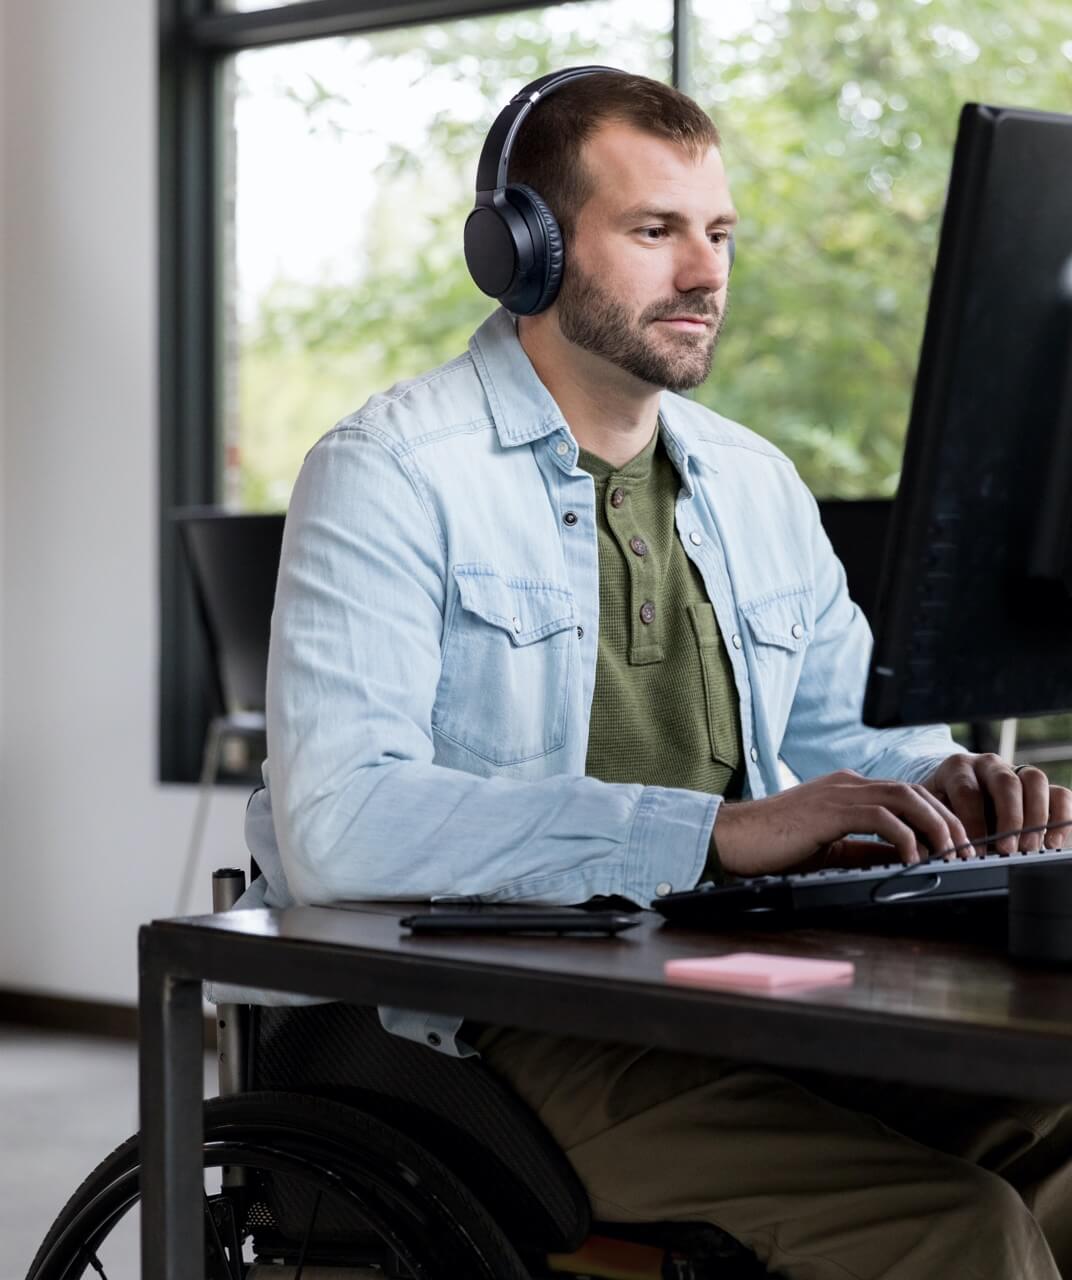 Mann im Rollstuhl, der an seinem Computer sitzt. Er hat einen Bart und trägt einen Kopfhörer. Er tippt auf der Tastatur und scheint in einem Büro zu arbeiten.